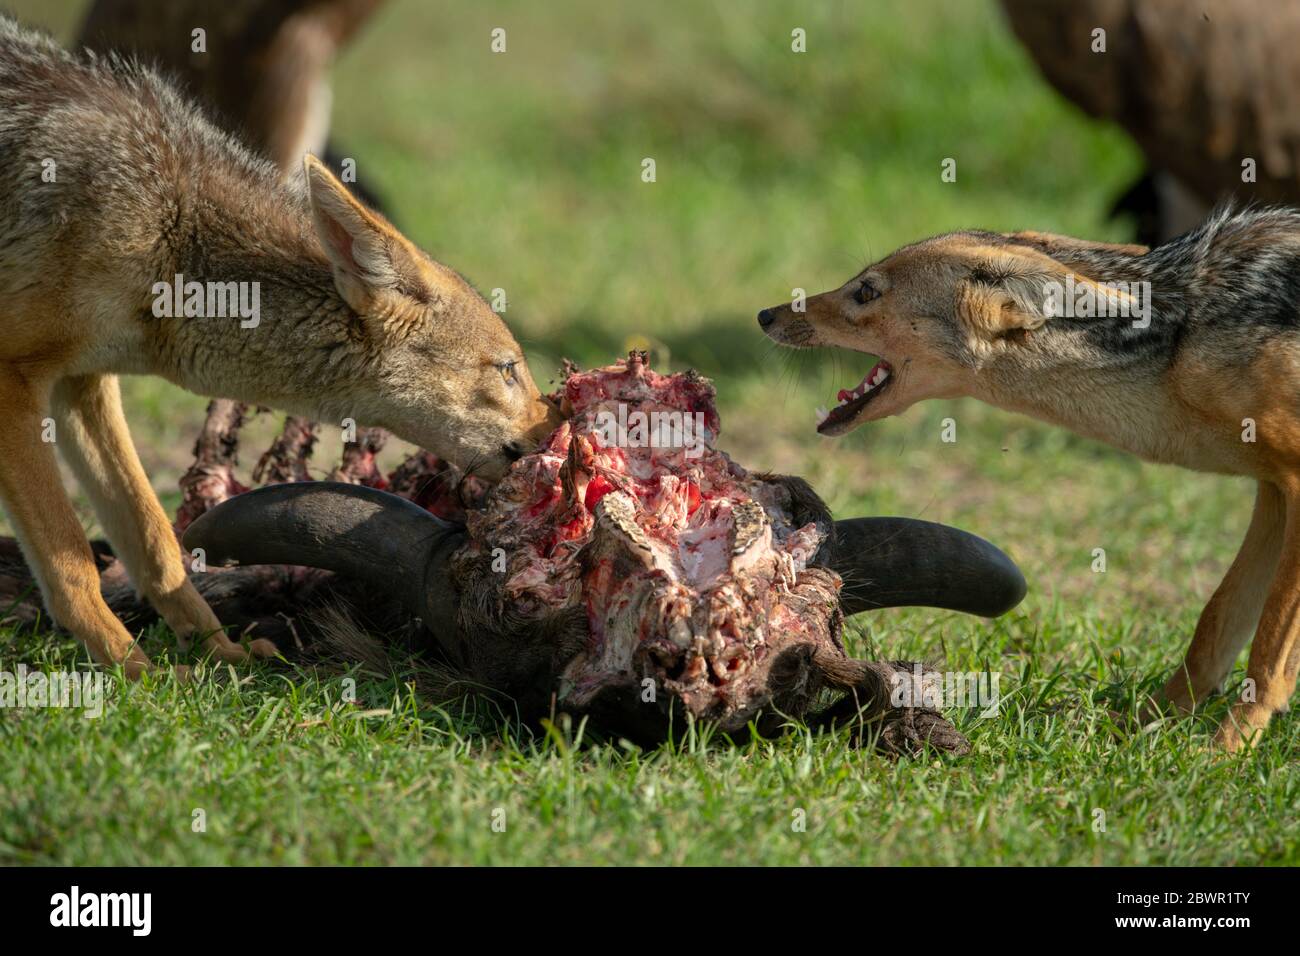 Close-up of black-backed jackals feeding on carcase Stock Photo